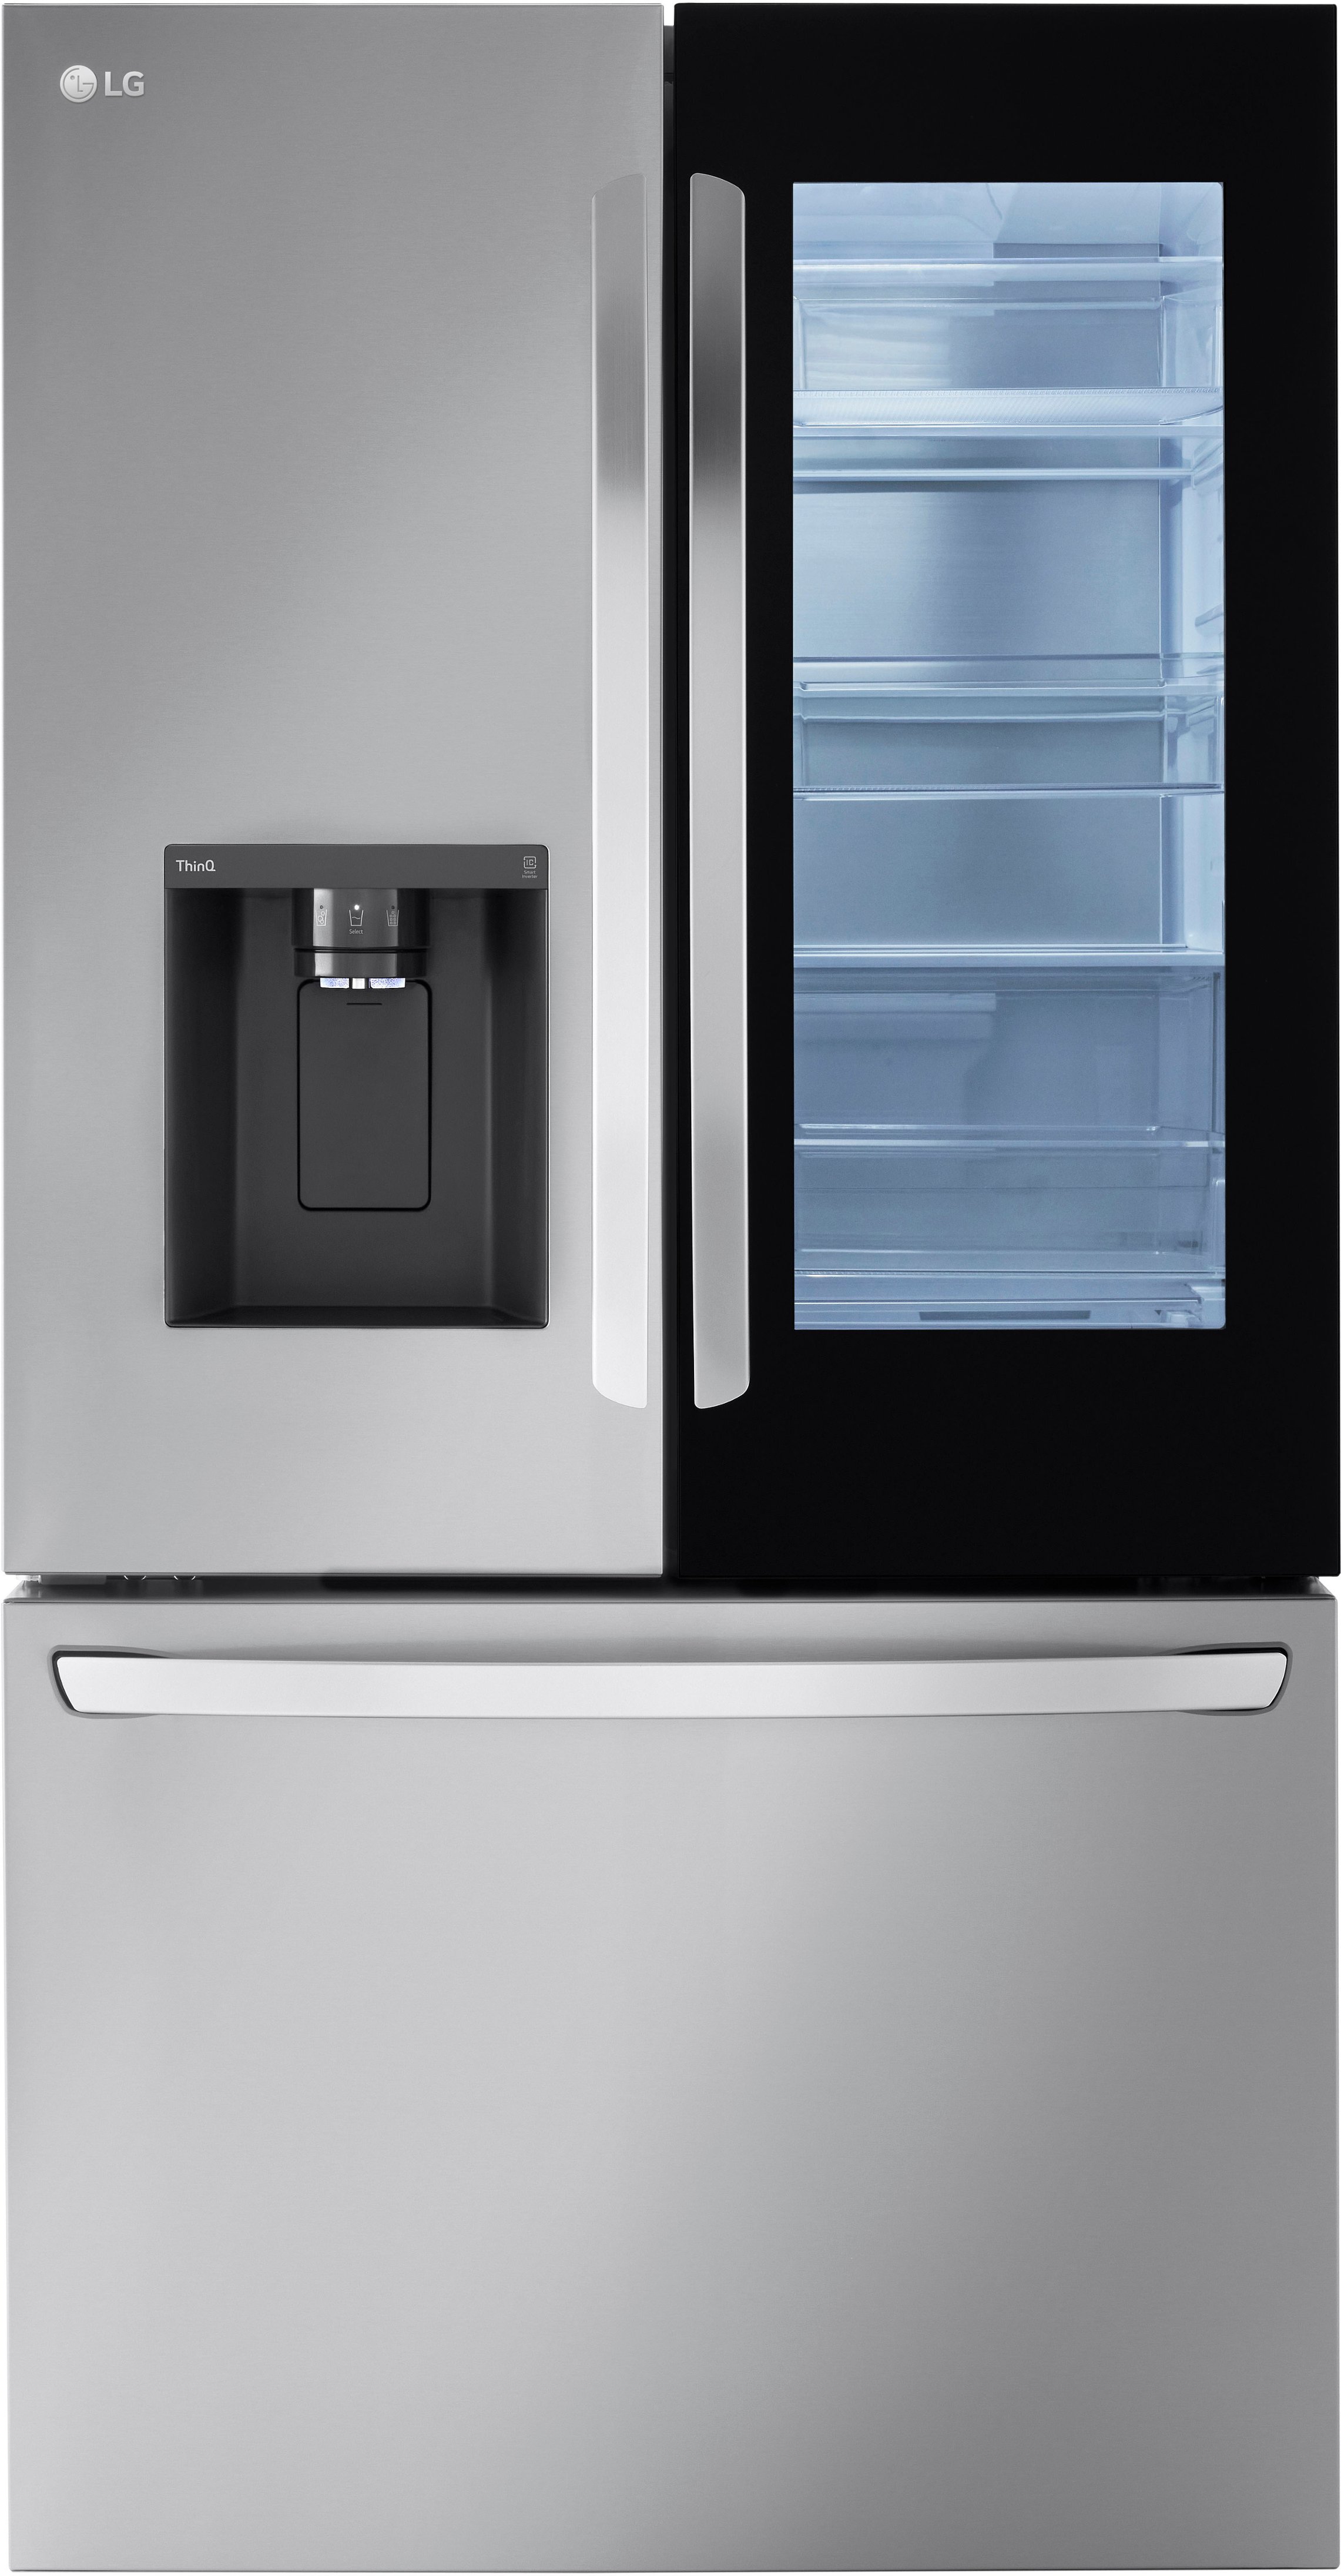 LG 26 Cu. ft. Smart InstaView Counter-Depth French Door Refrigerator